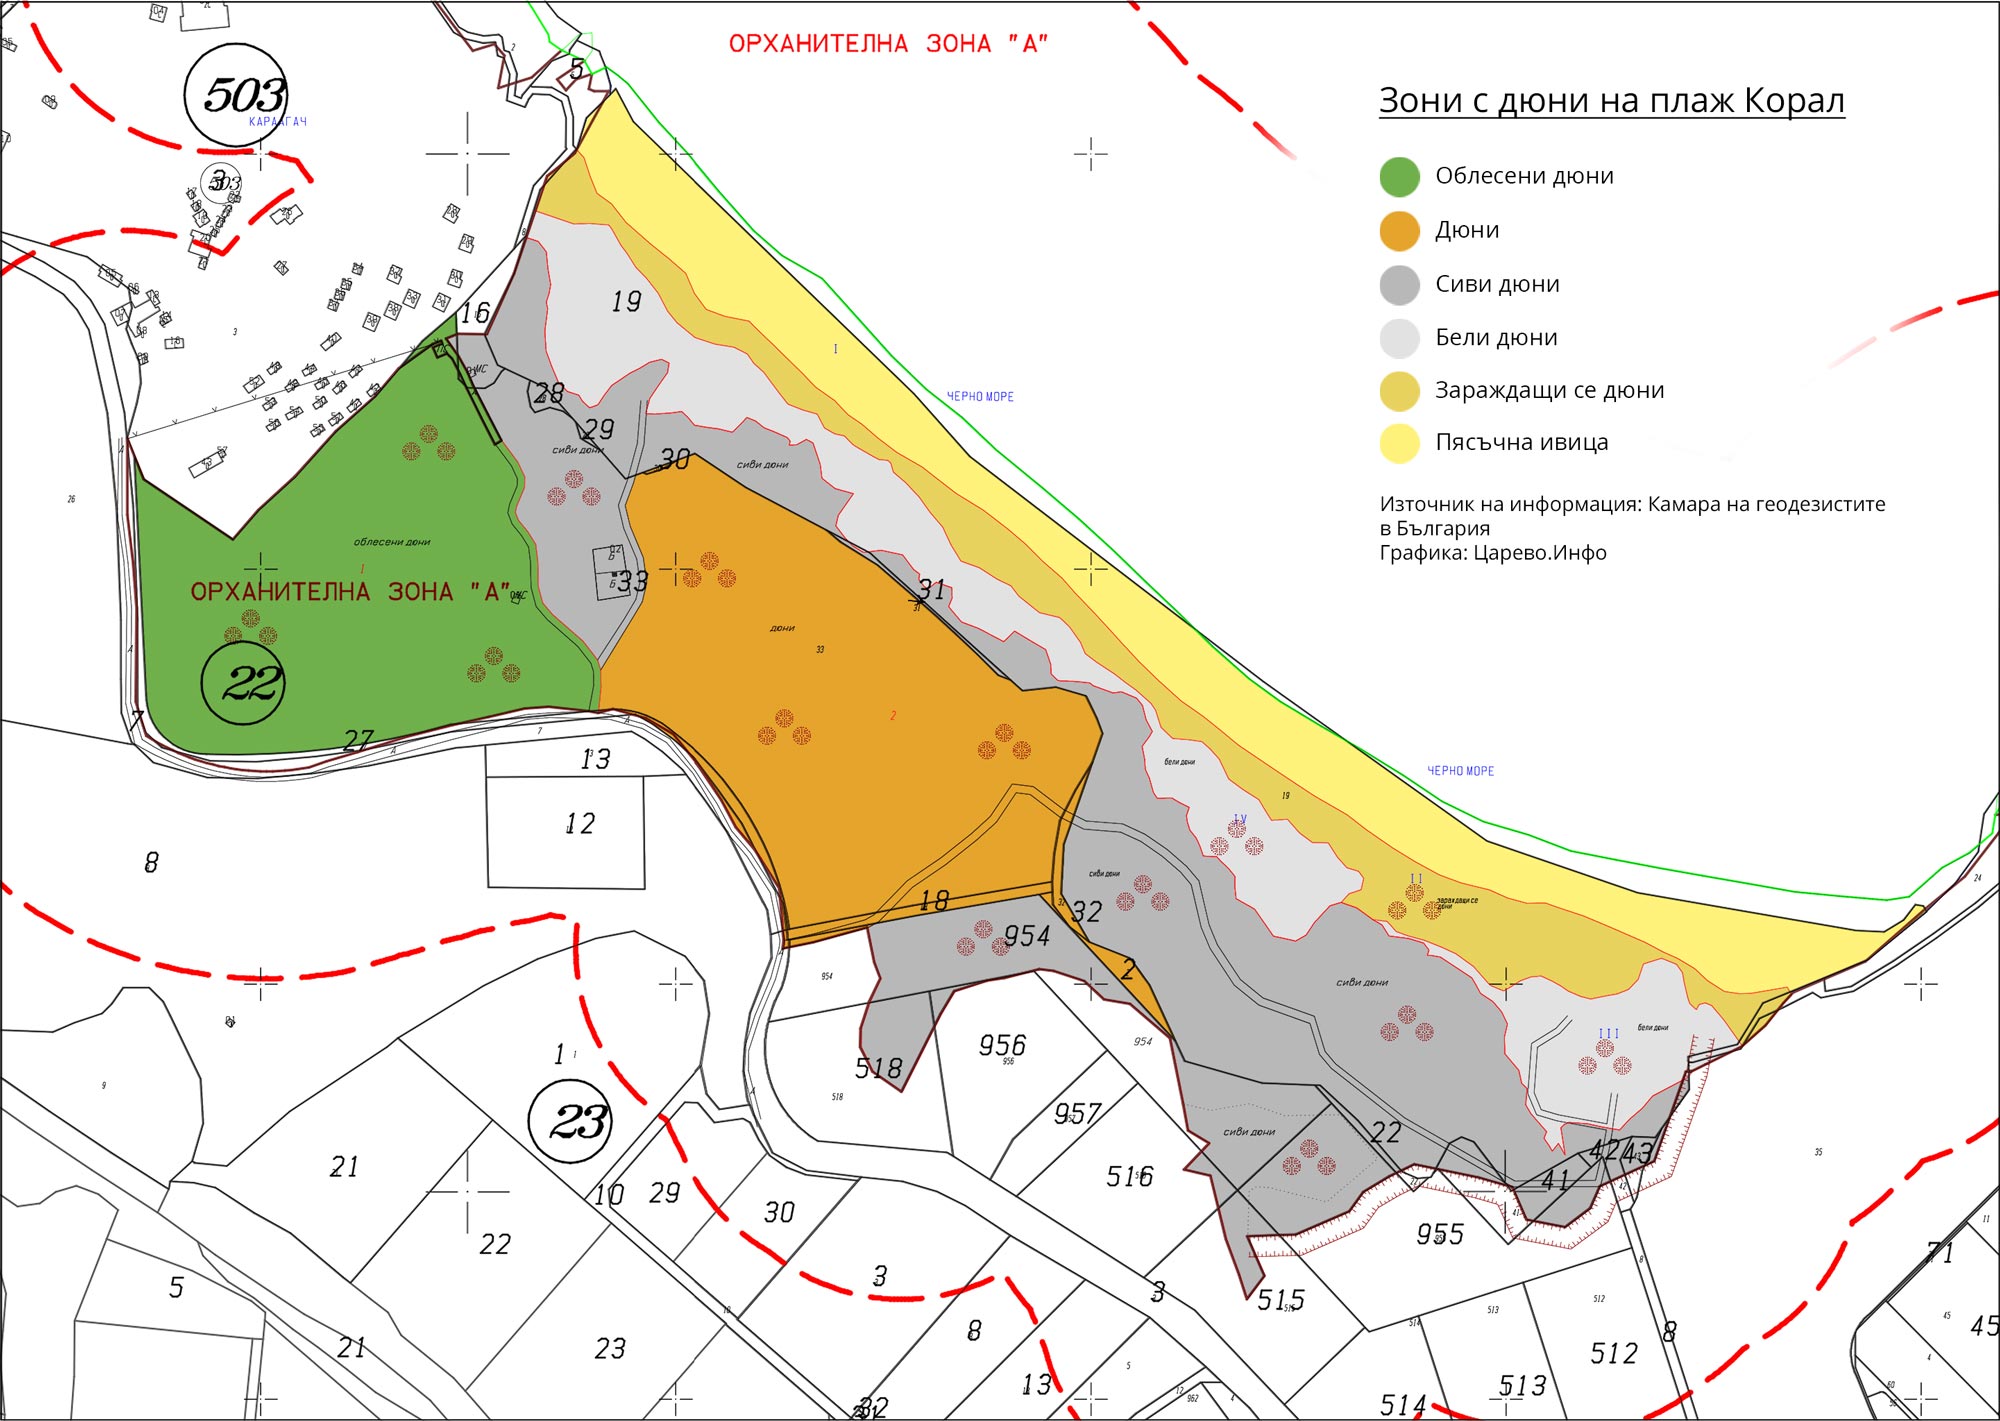 Частните имоти на плаж Корал за незаконни според Камарата на геодезистите в България